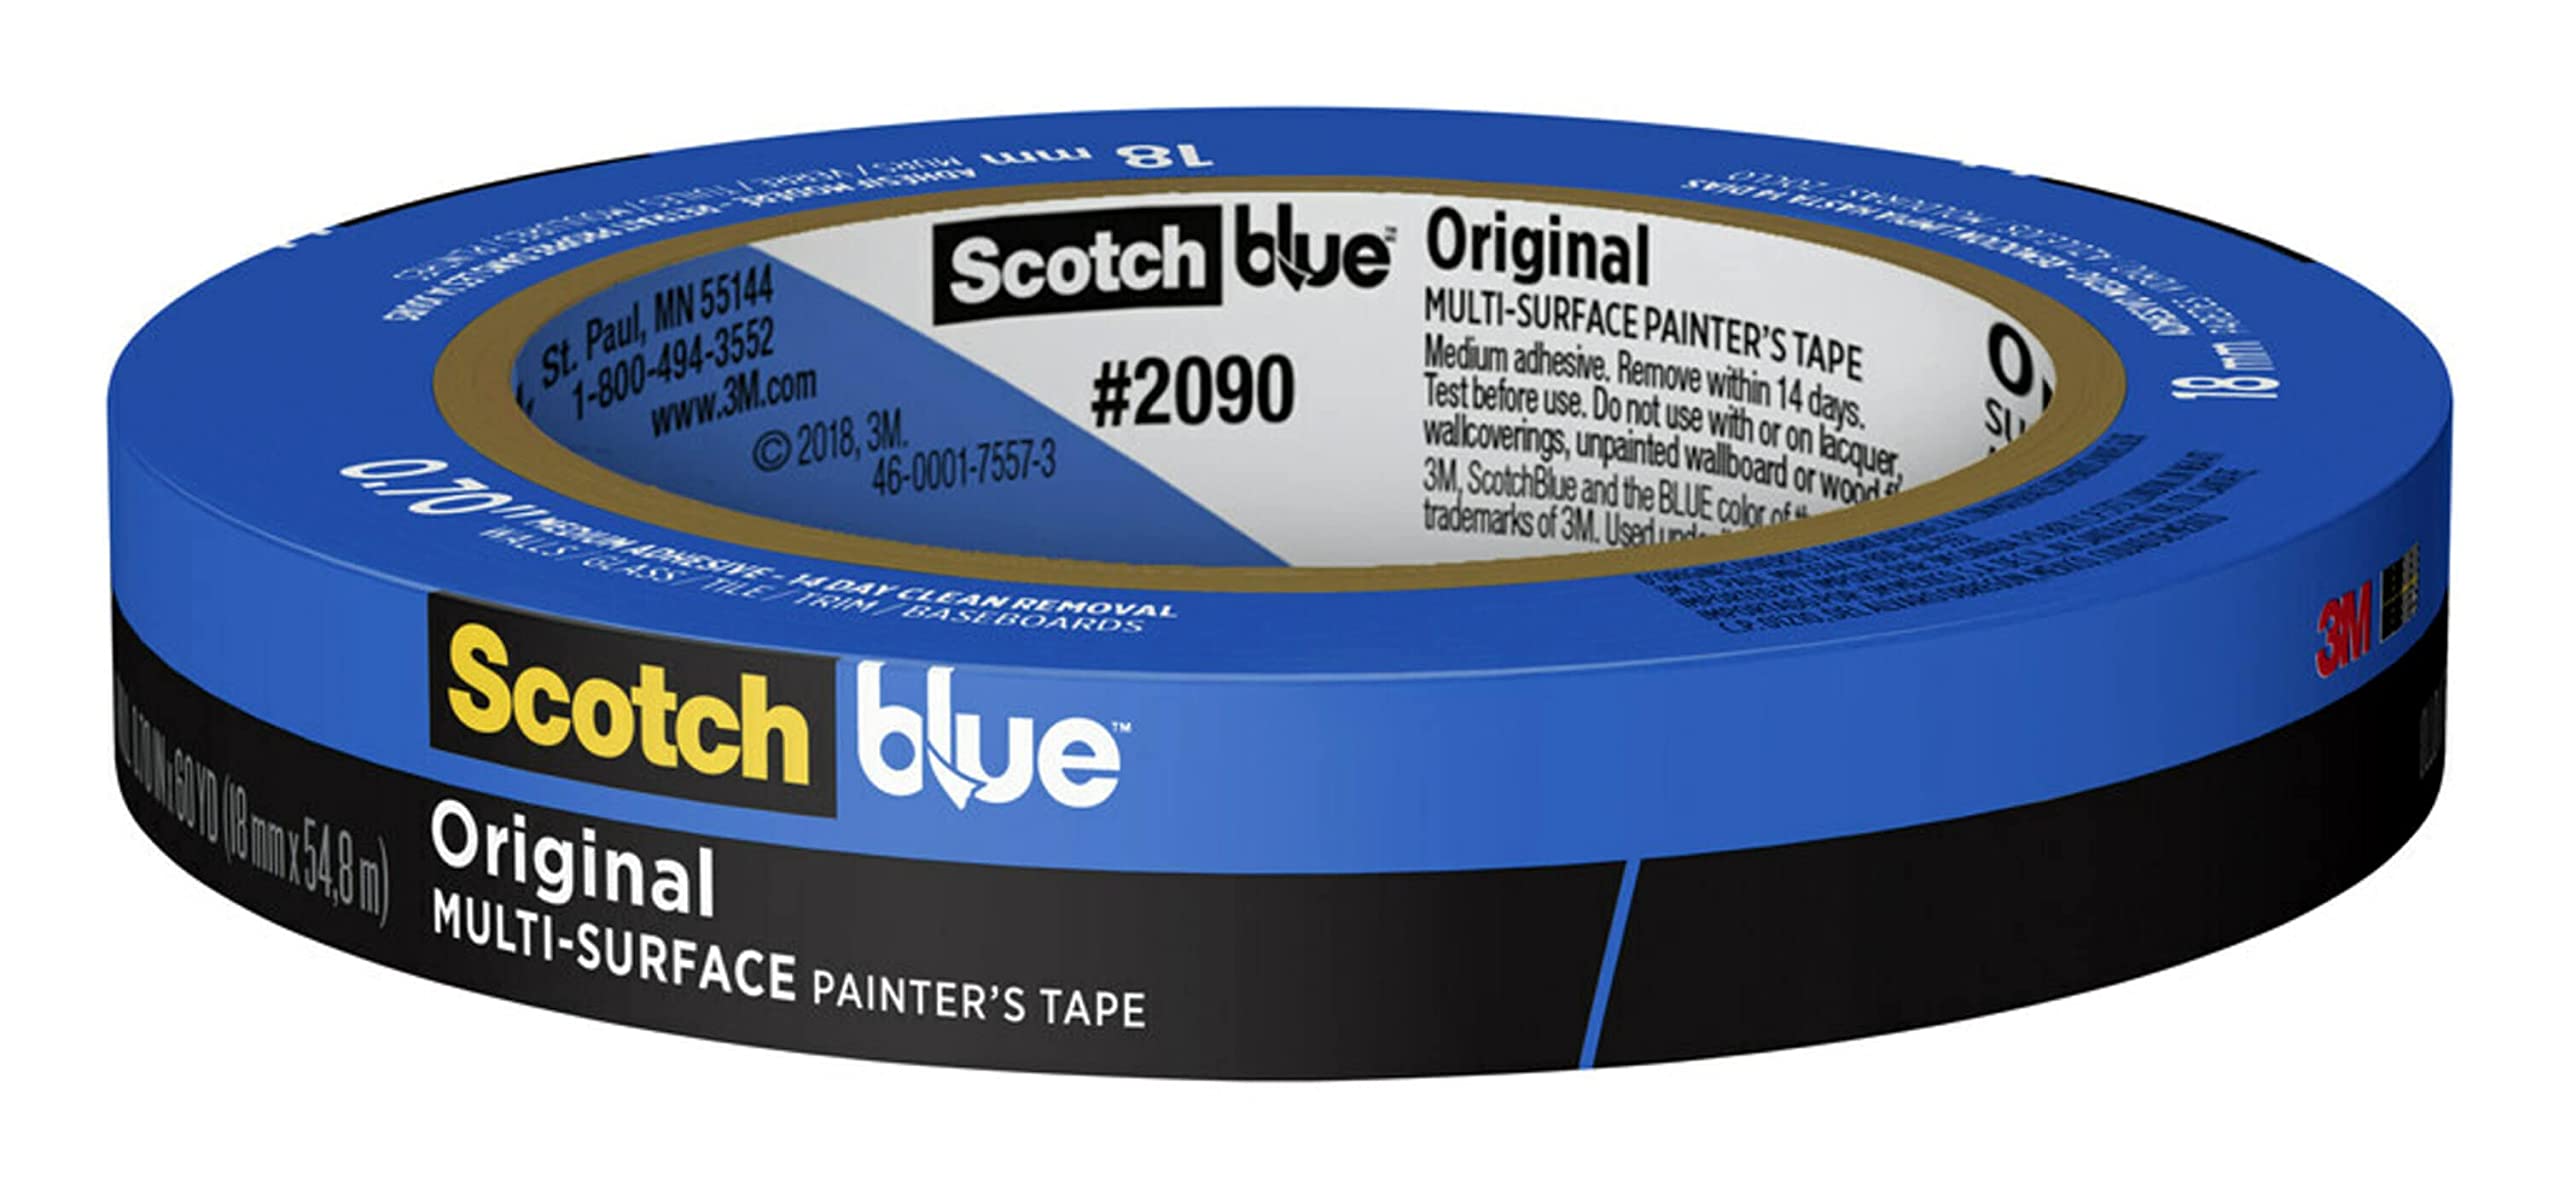 Scotch الشريط الأزرق الأصلي متعدد الأسطح الرسام